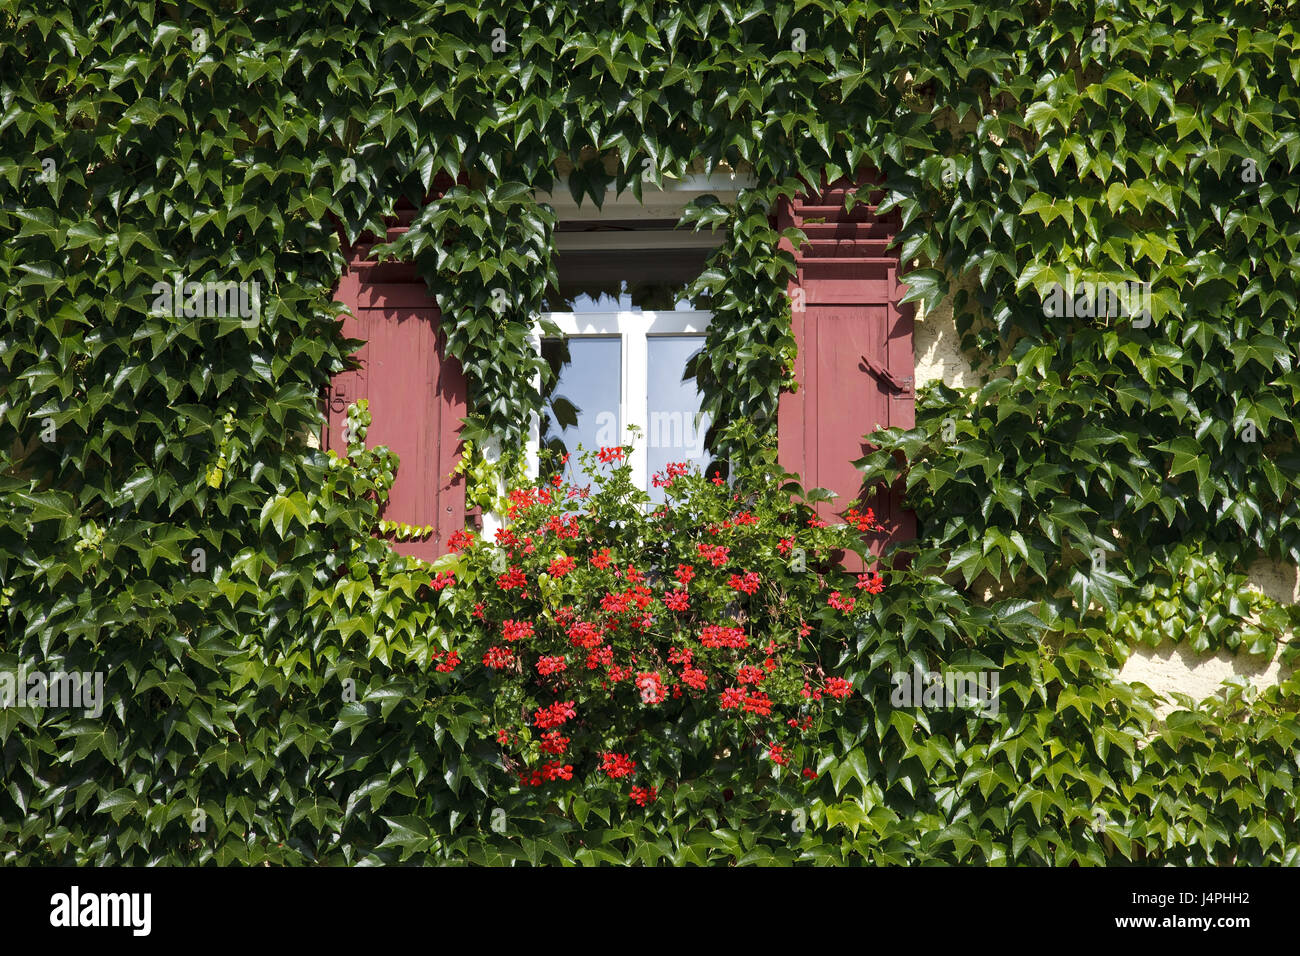 Germania, Kiedrich, casa di facciata, Rankpflanzen, dettaglio finestra, fiori, Foto Stock